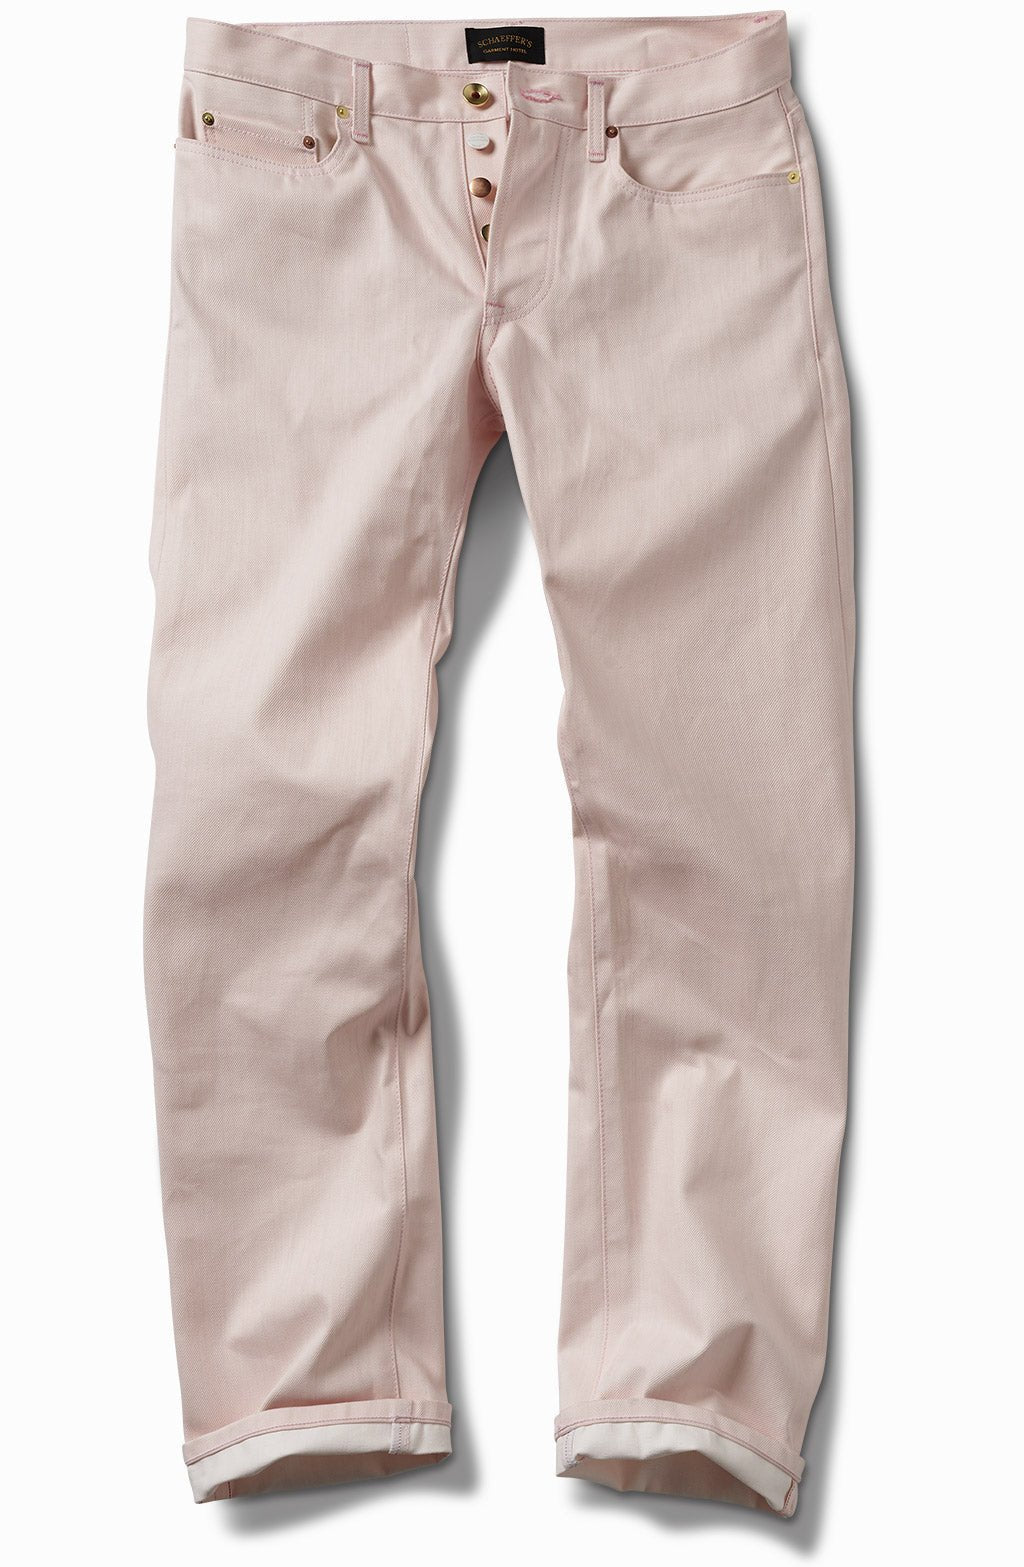 Pink Over White - Tall Rise Straight Leg - Schaeffer's Garment Hotel